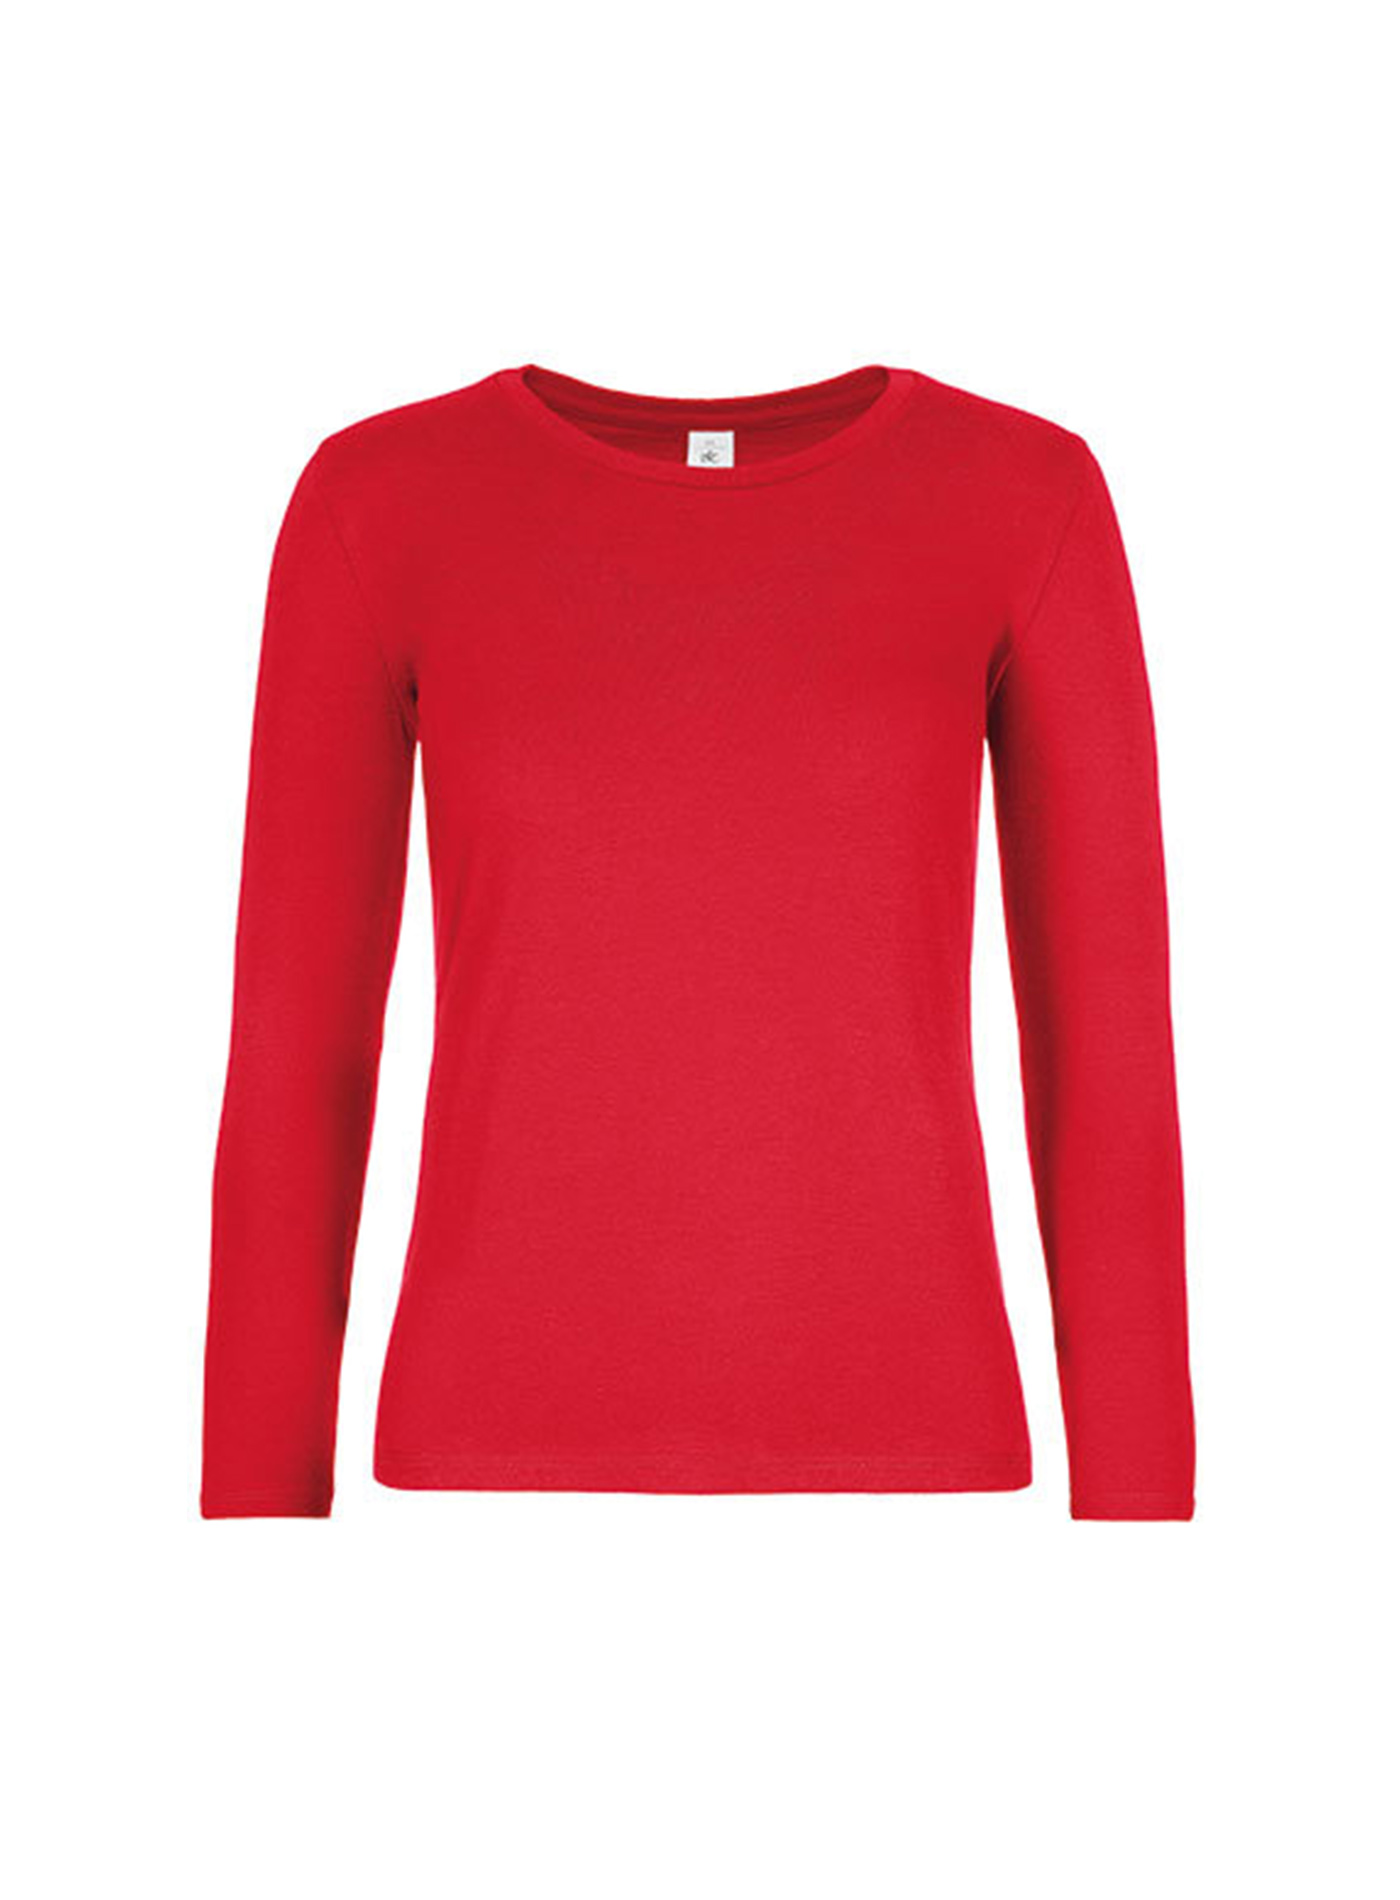 Dámské tričko s dlouhým rukávem B&C Collection - Červená S